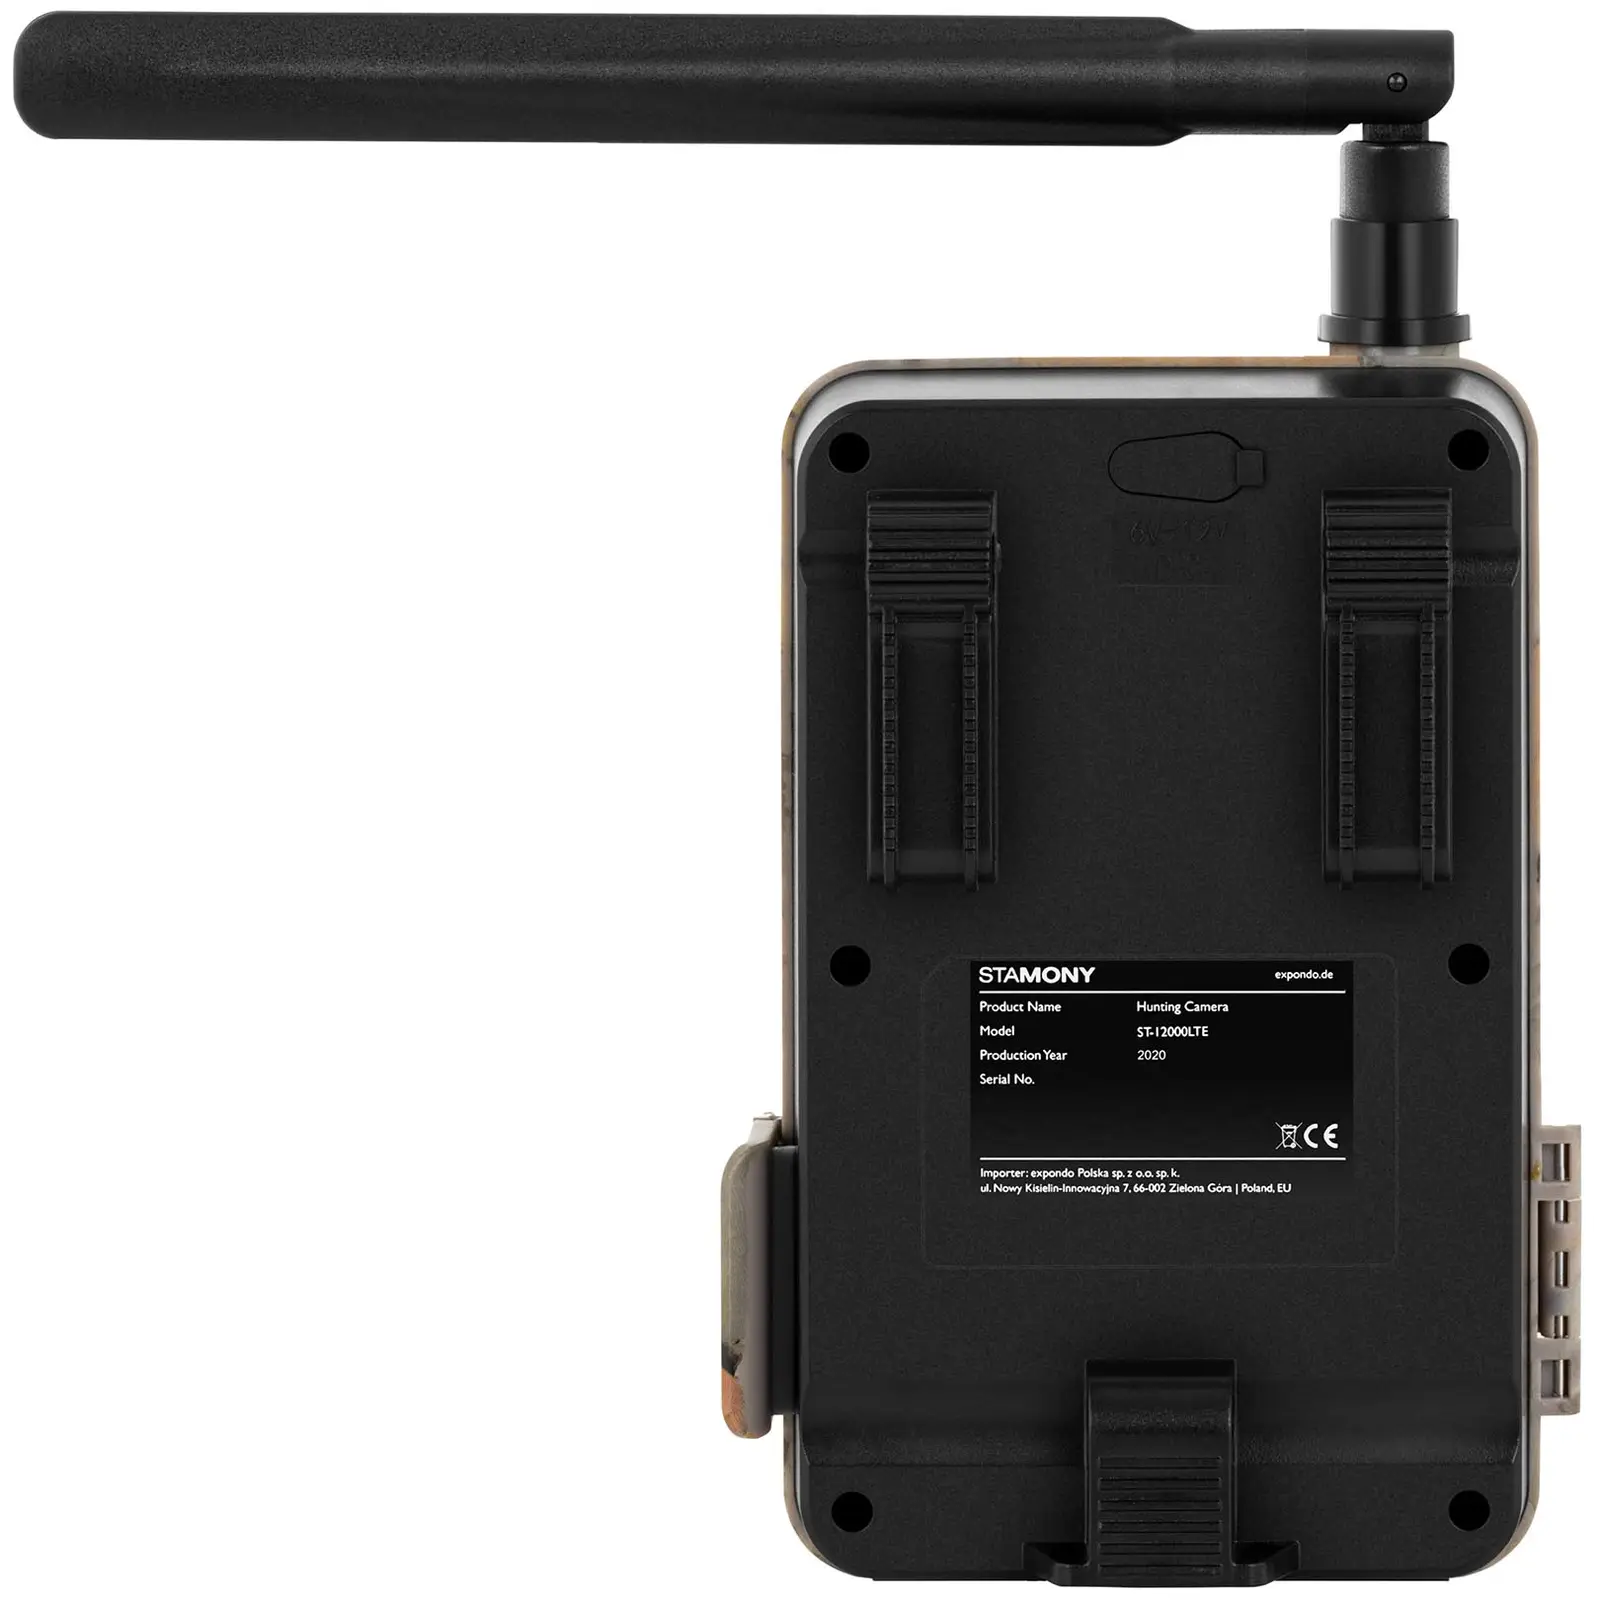 Åtelkamera - 8 MP - Full HD - 44 IR-LEDs - 20 m - 0,3 s - LTE med GSM-förstärkare